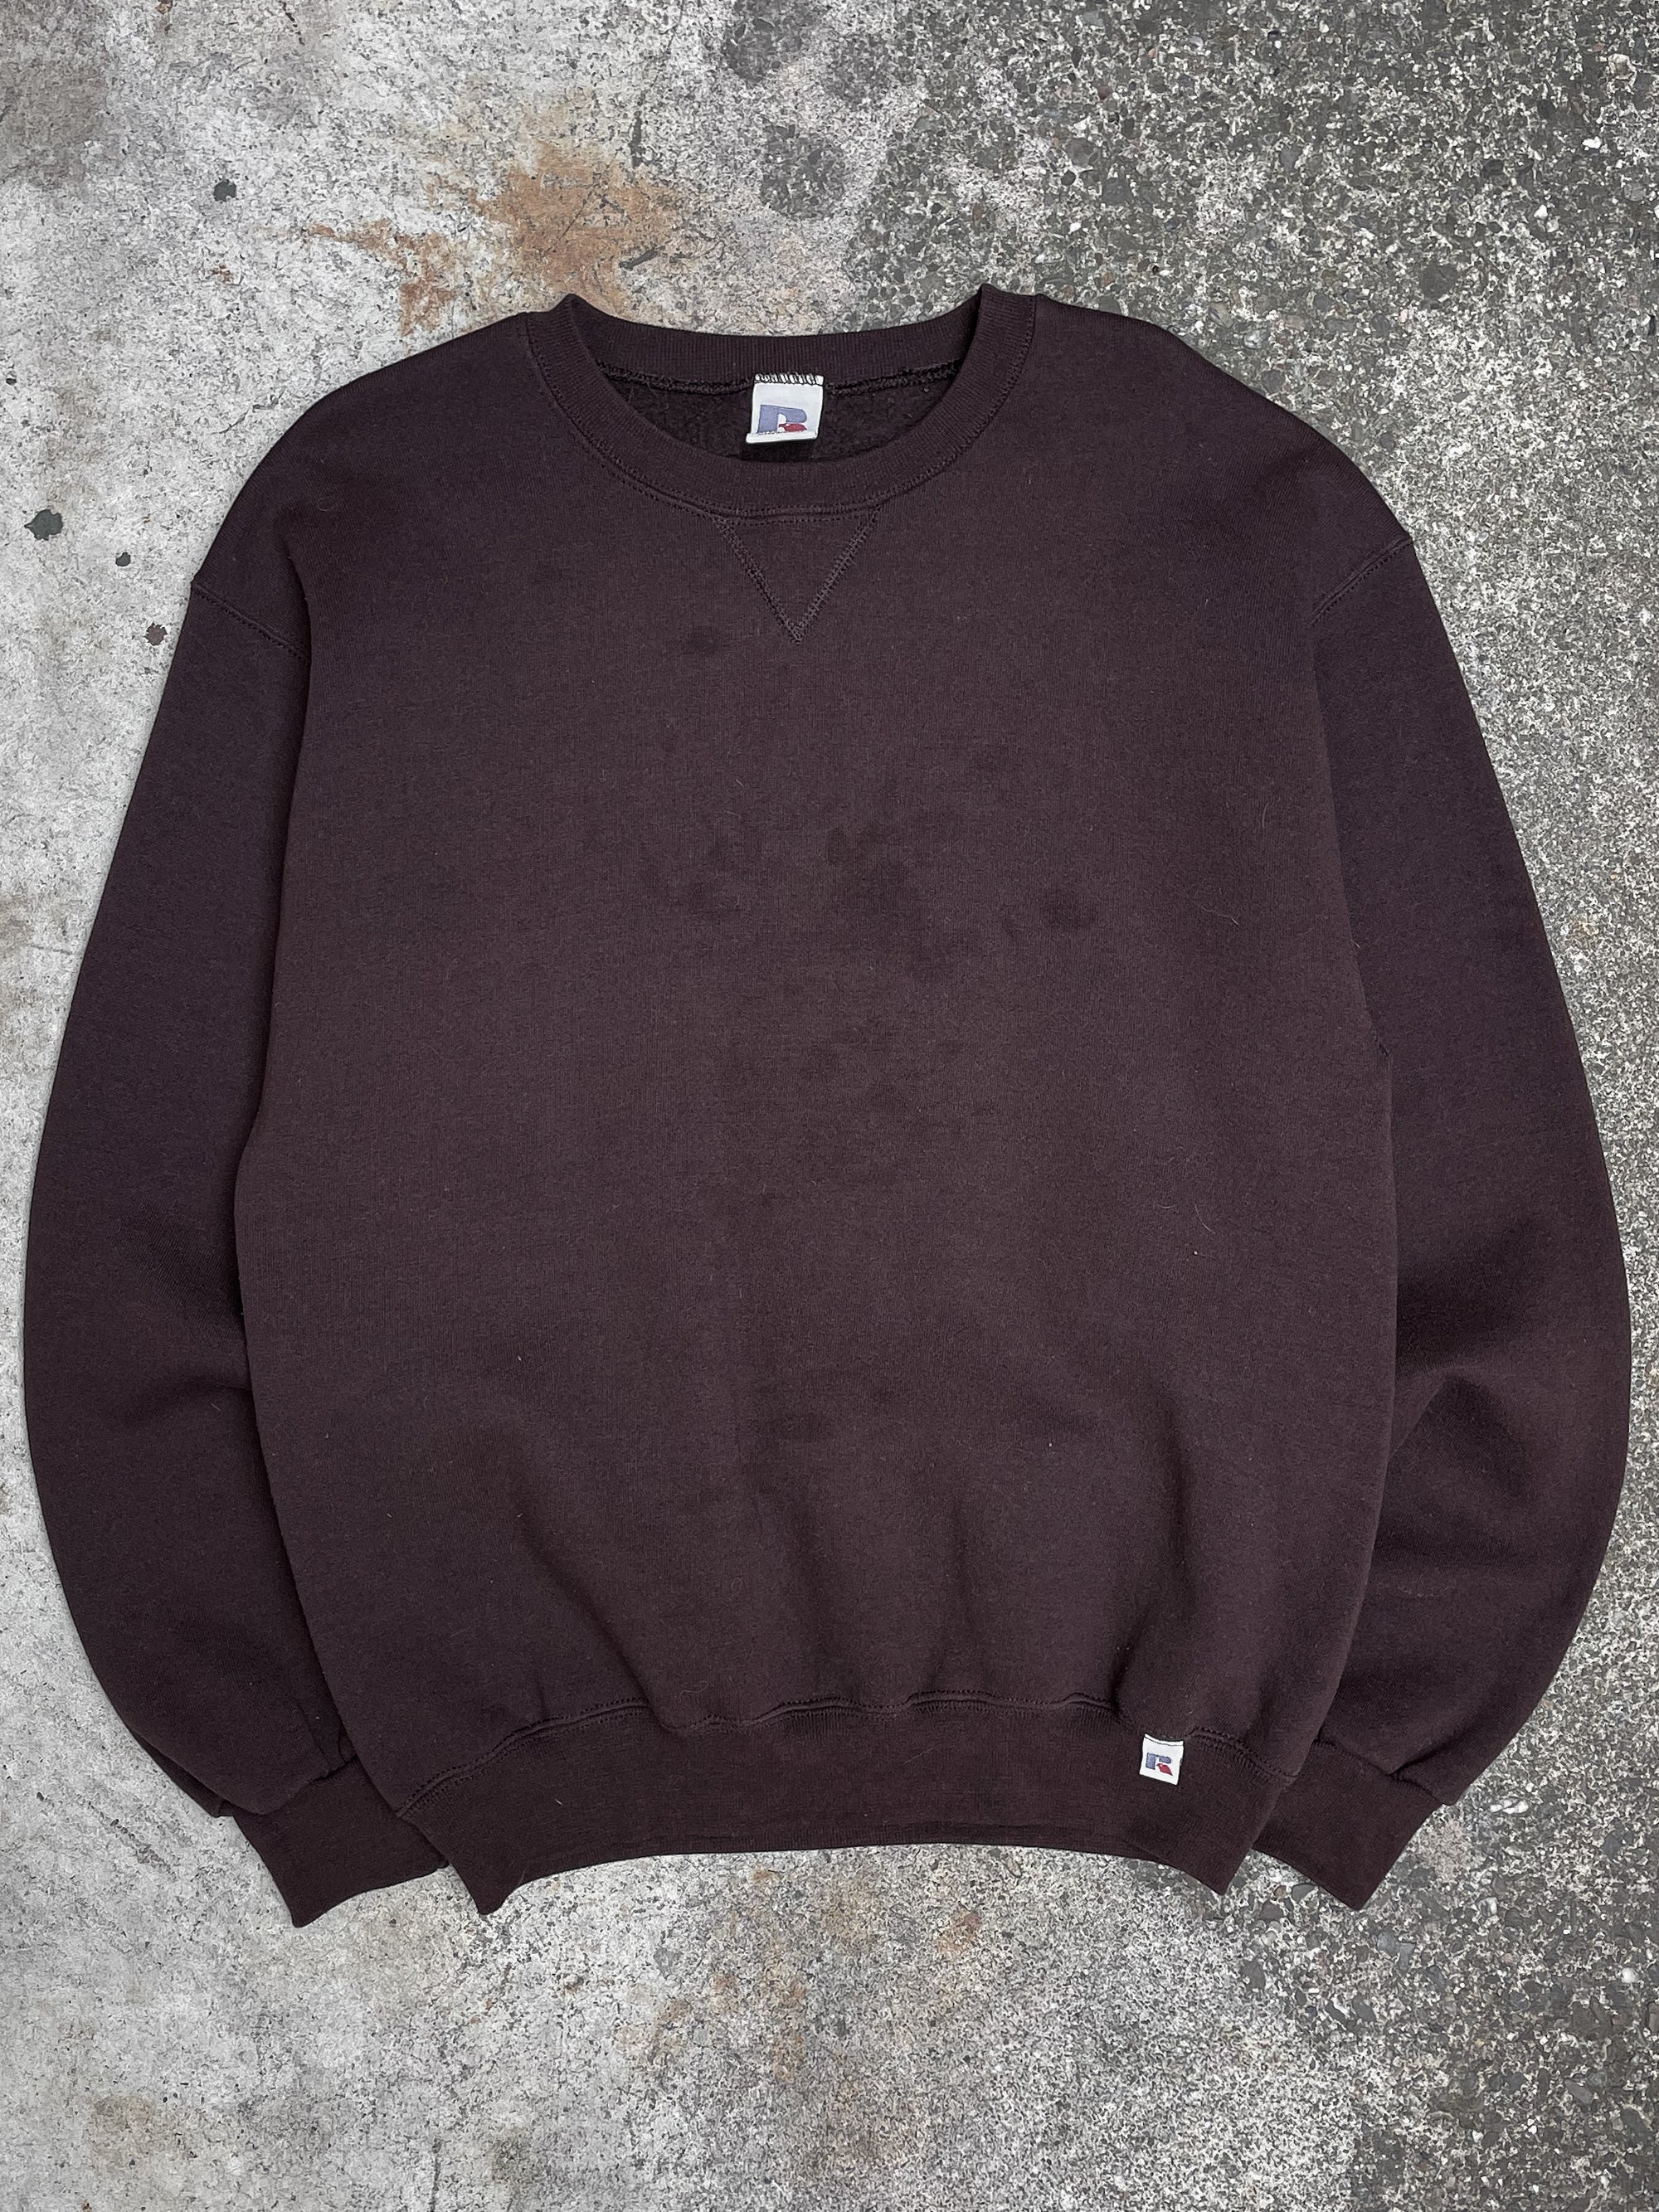 Vintage Russell Brown Blank Sweatshirt (M)